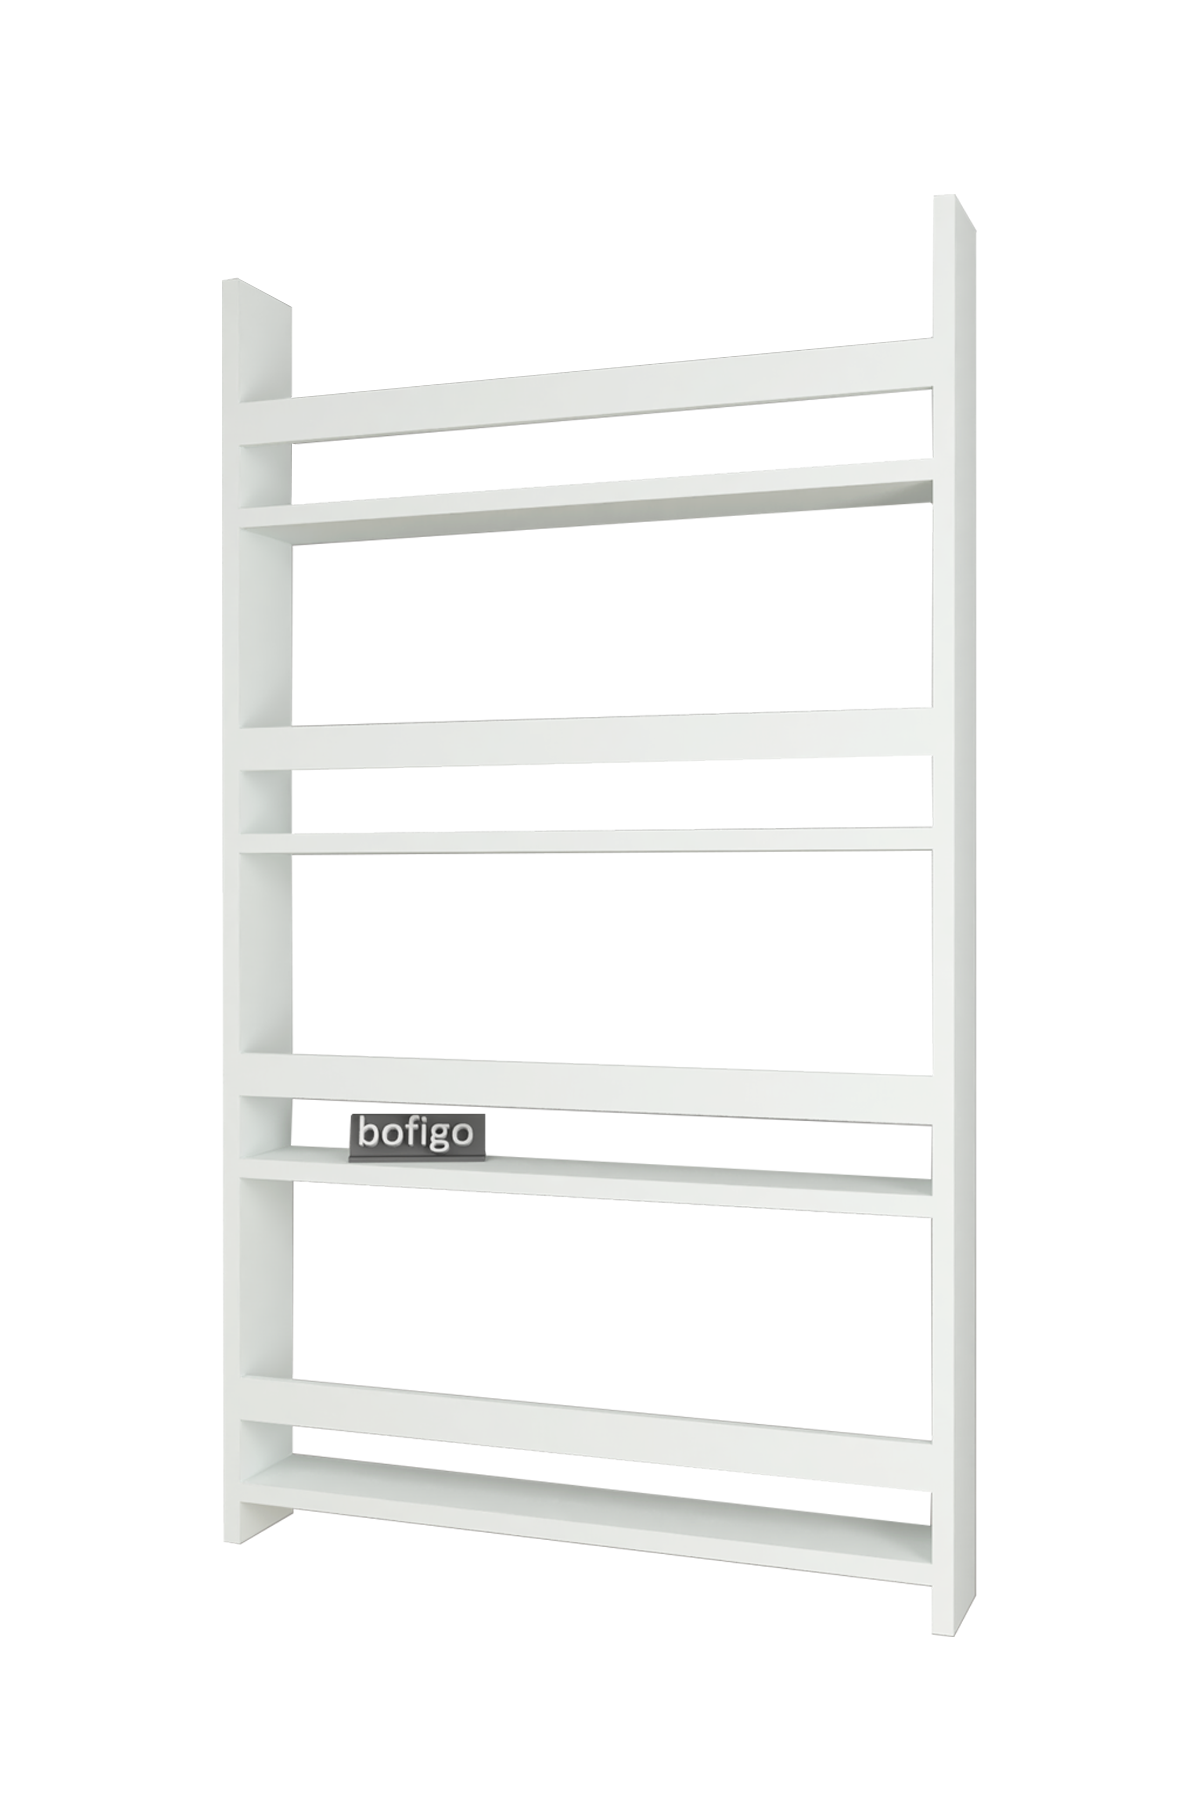 Bofigo 4 Shelves 120 x 70 Cm Montessori Bookshelf Educational Children's Bookcase White